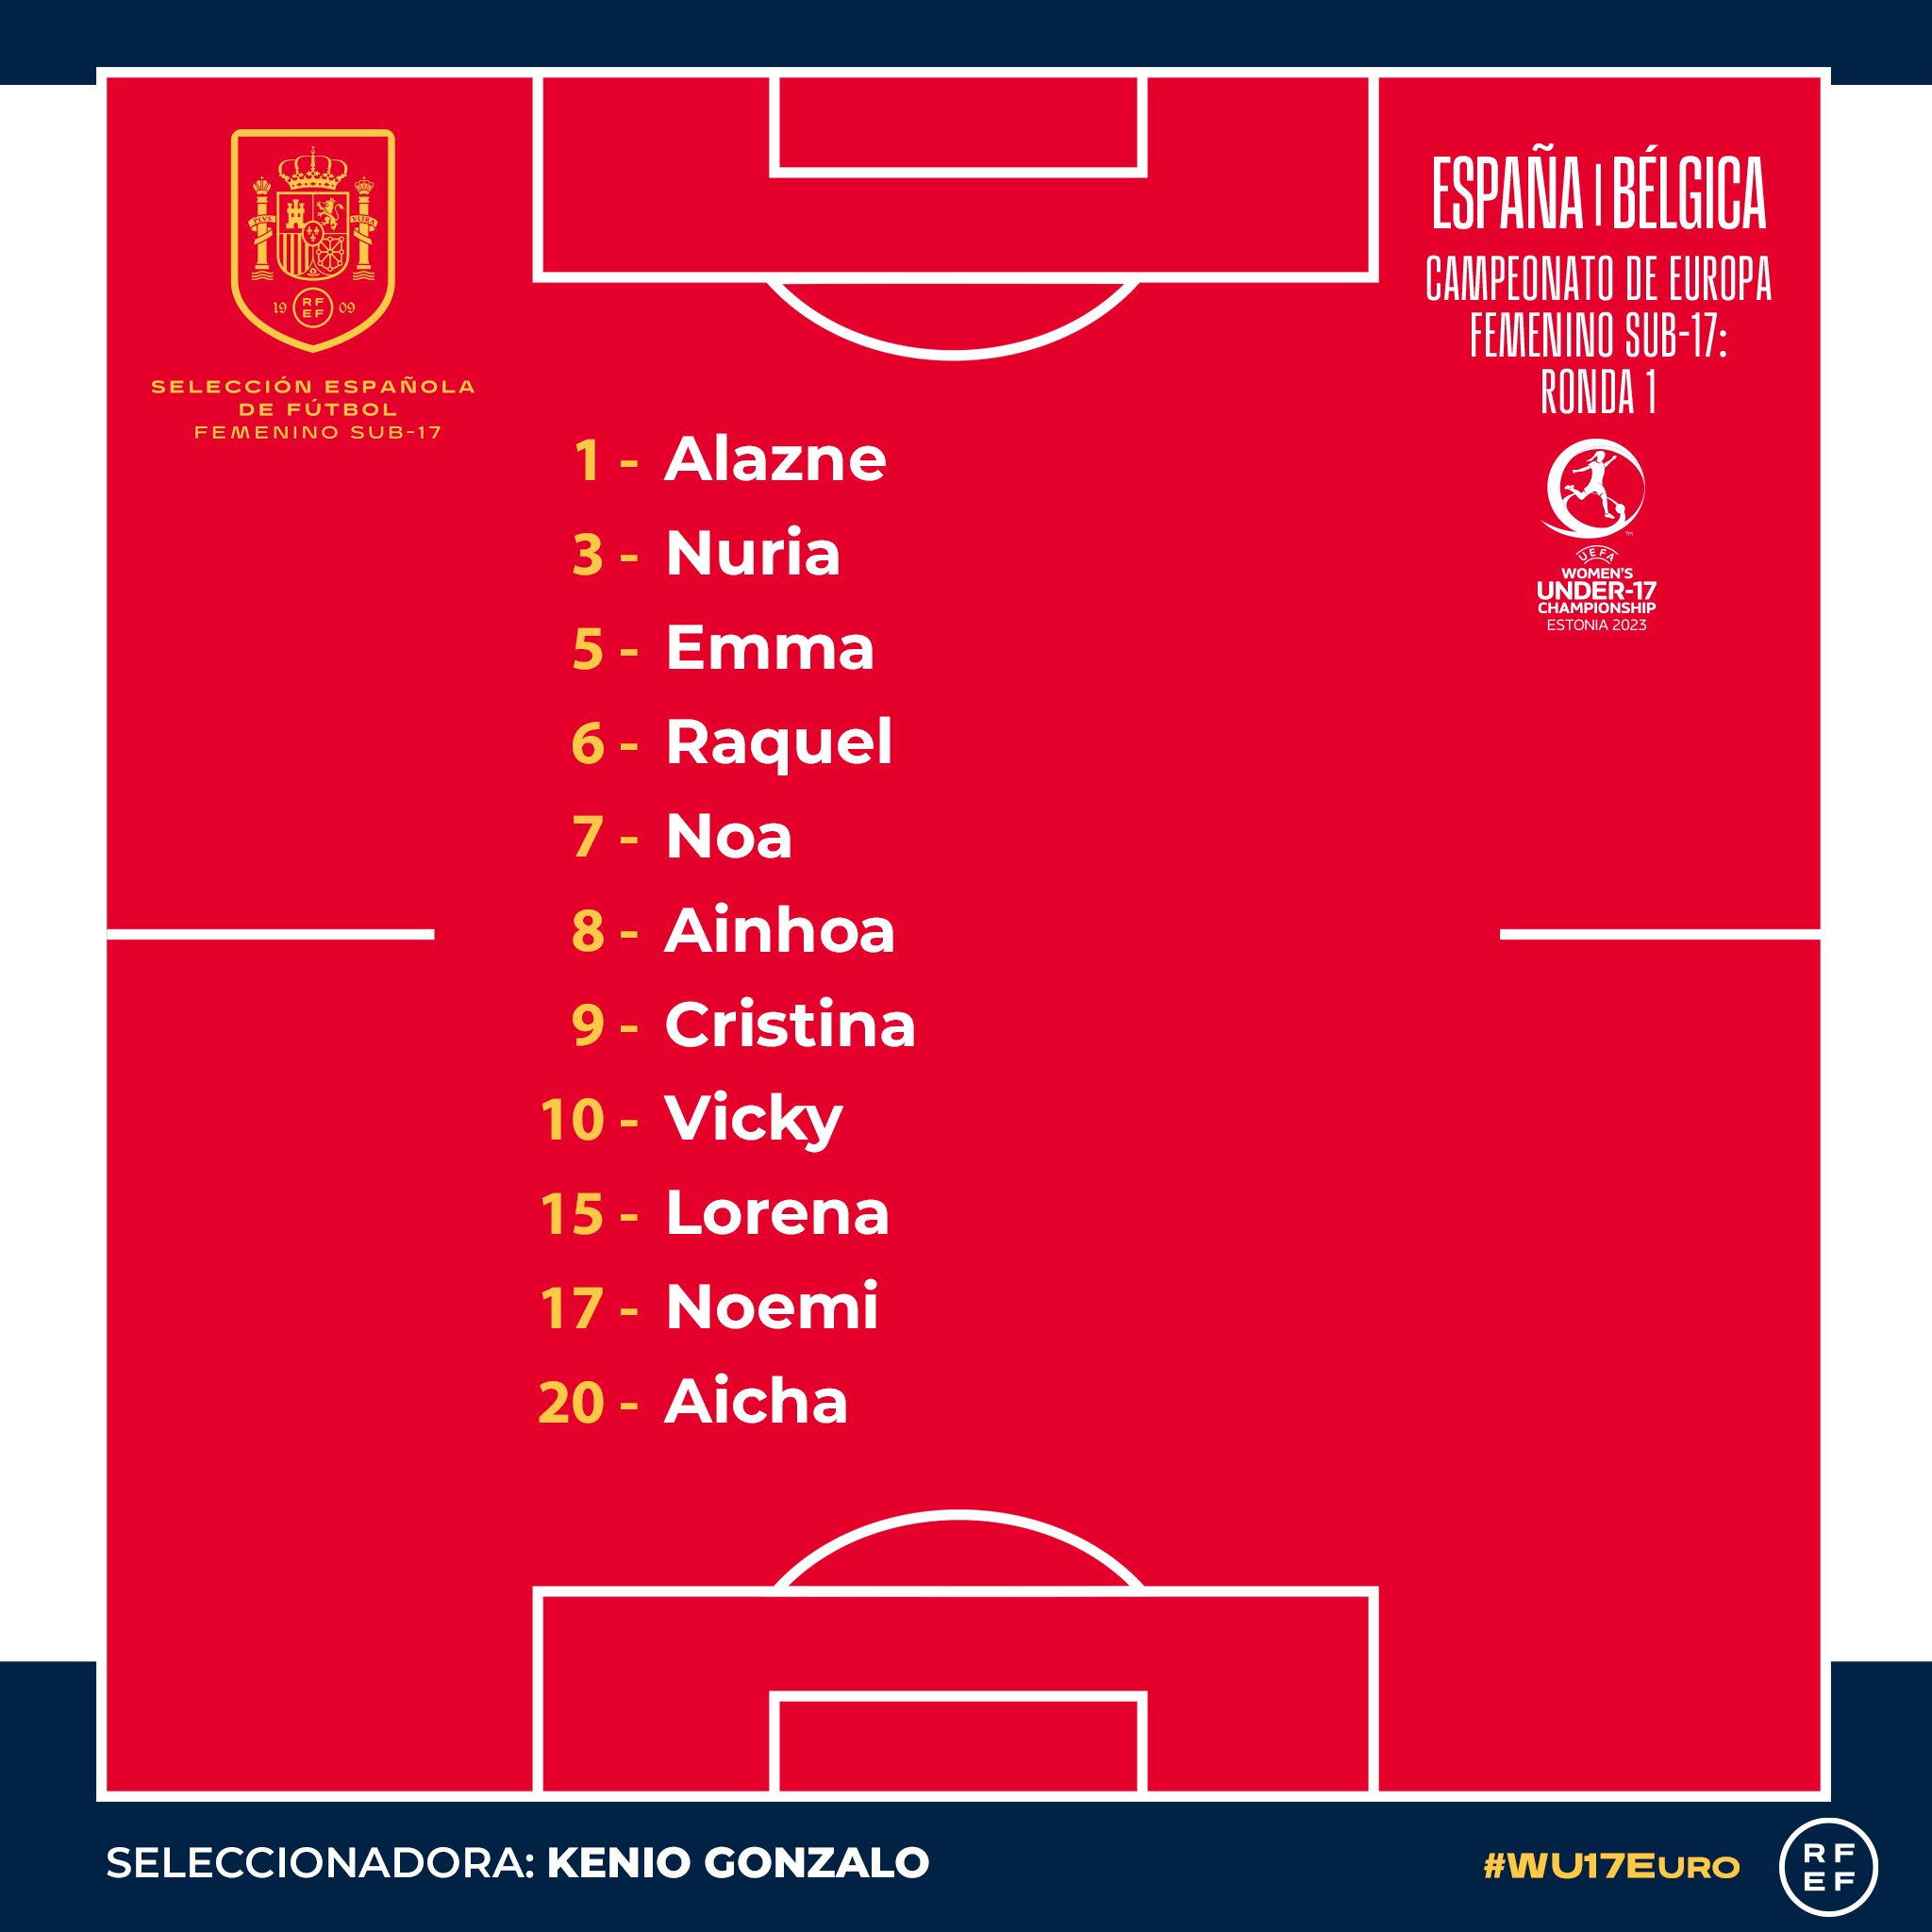 Selección Española Femenina de Fútbol on Twitter: "🥁Con todos ustedes: 𝐗𝐈 Las jugadoras elegidas por para salir al inicio del duelo Bélgica. 🙌🏼 ¡A por la primera victoria, chicas!